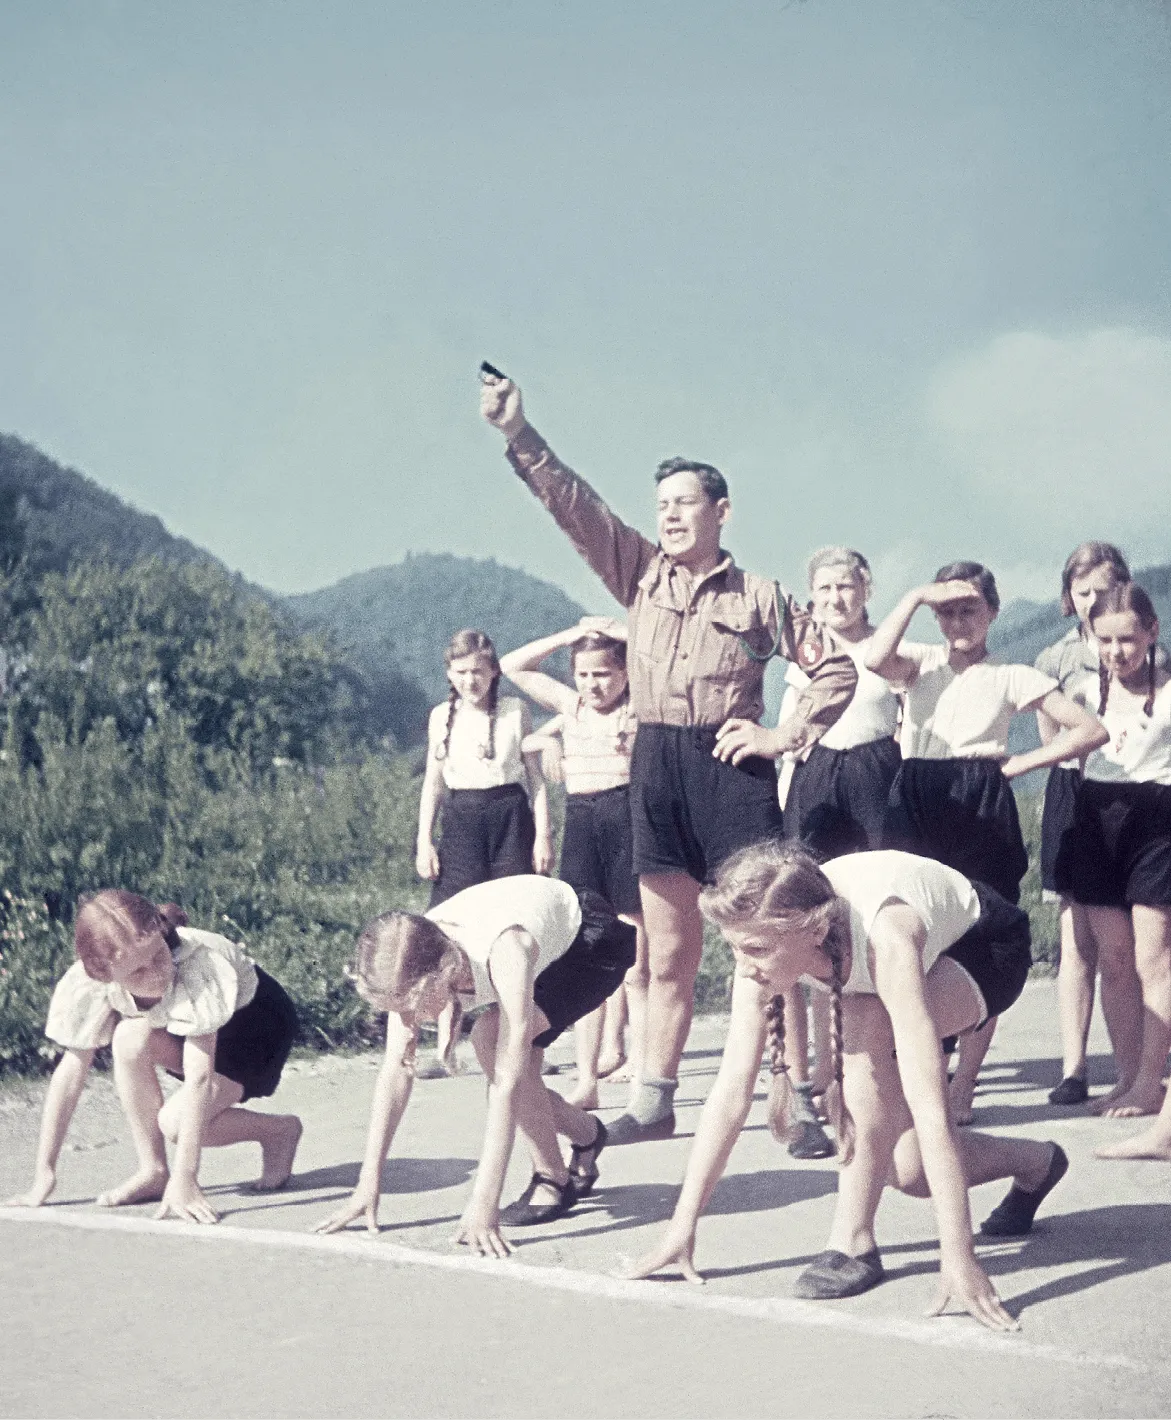 Course de la « Ligue des jeunes filles allemandes », 1940, photographie anonyme